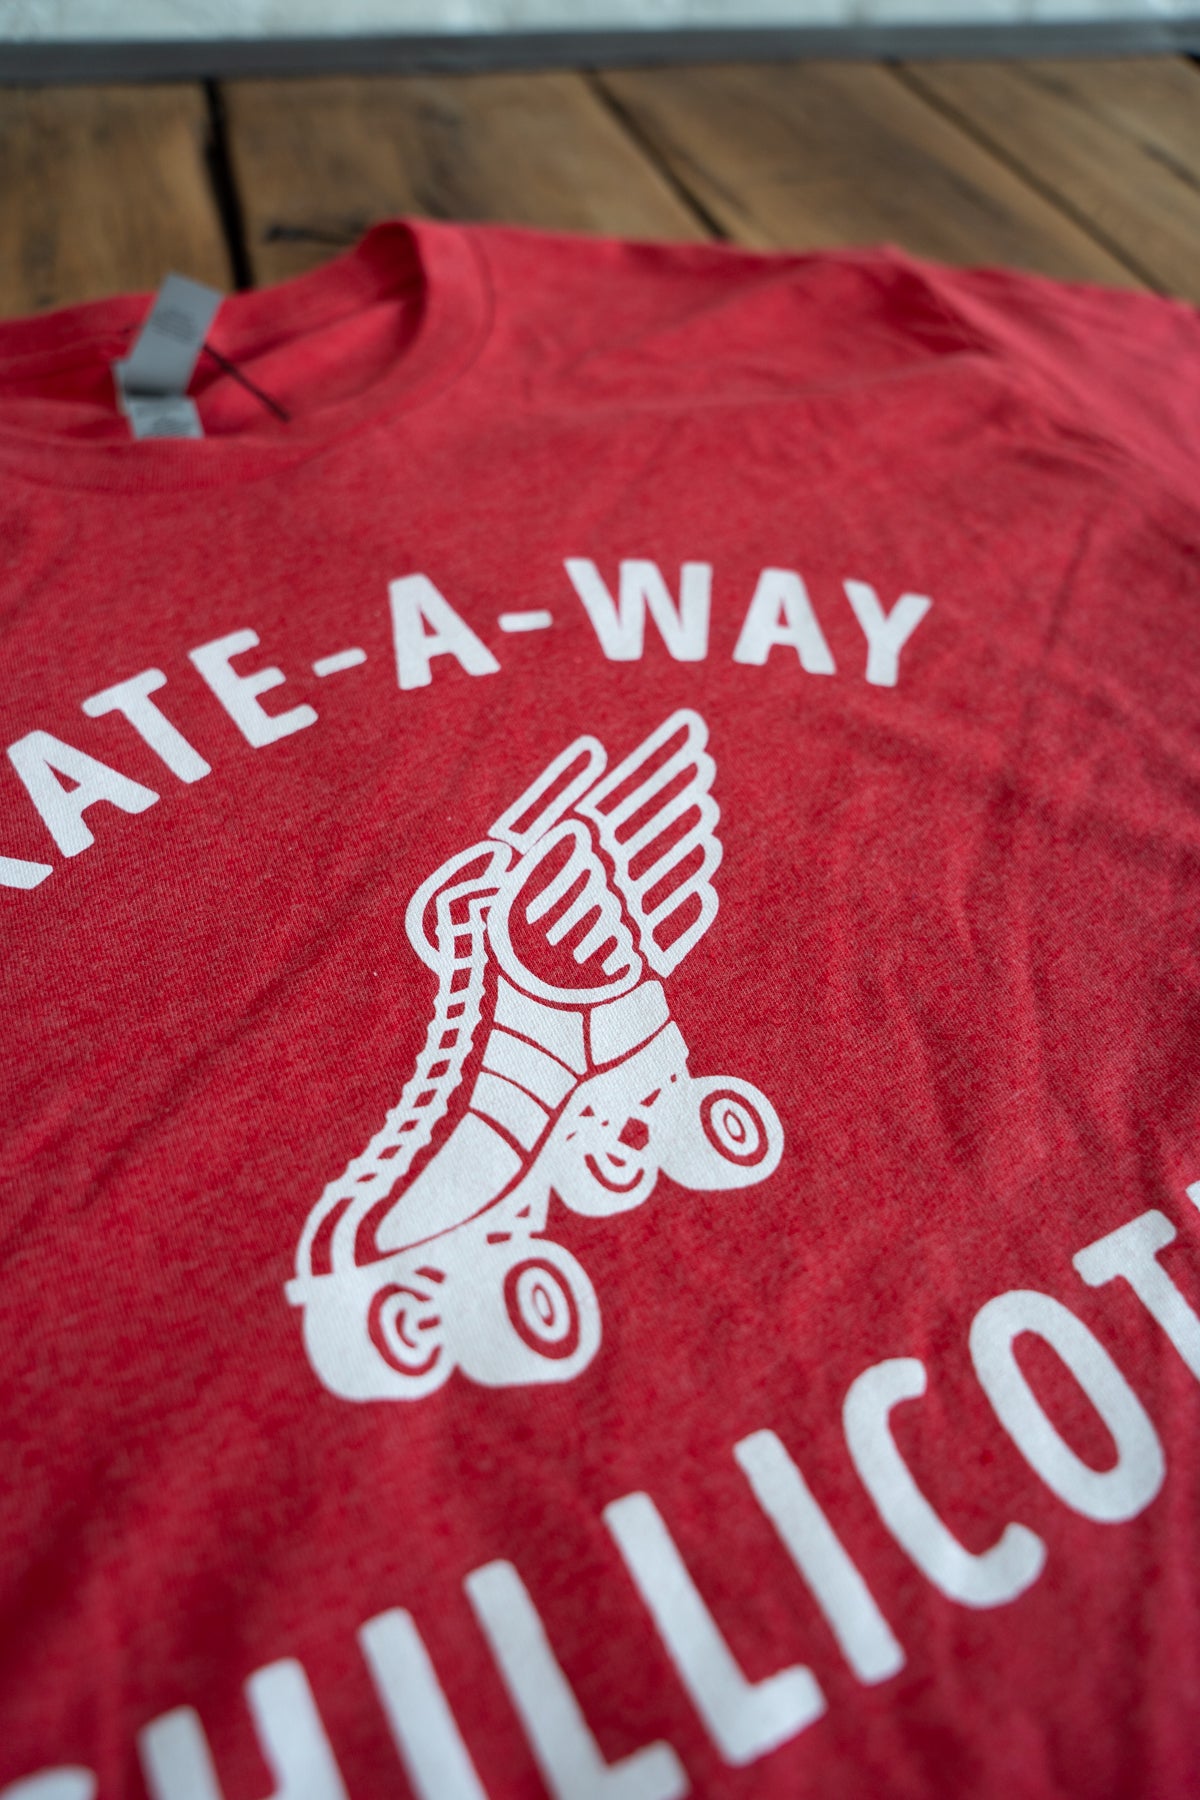 Skate-A-Way TShirt